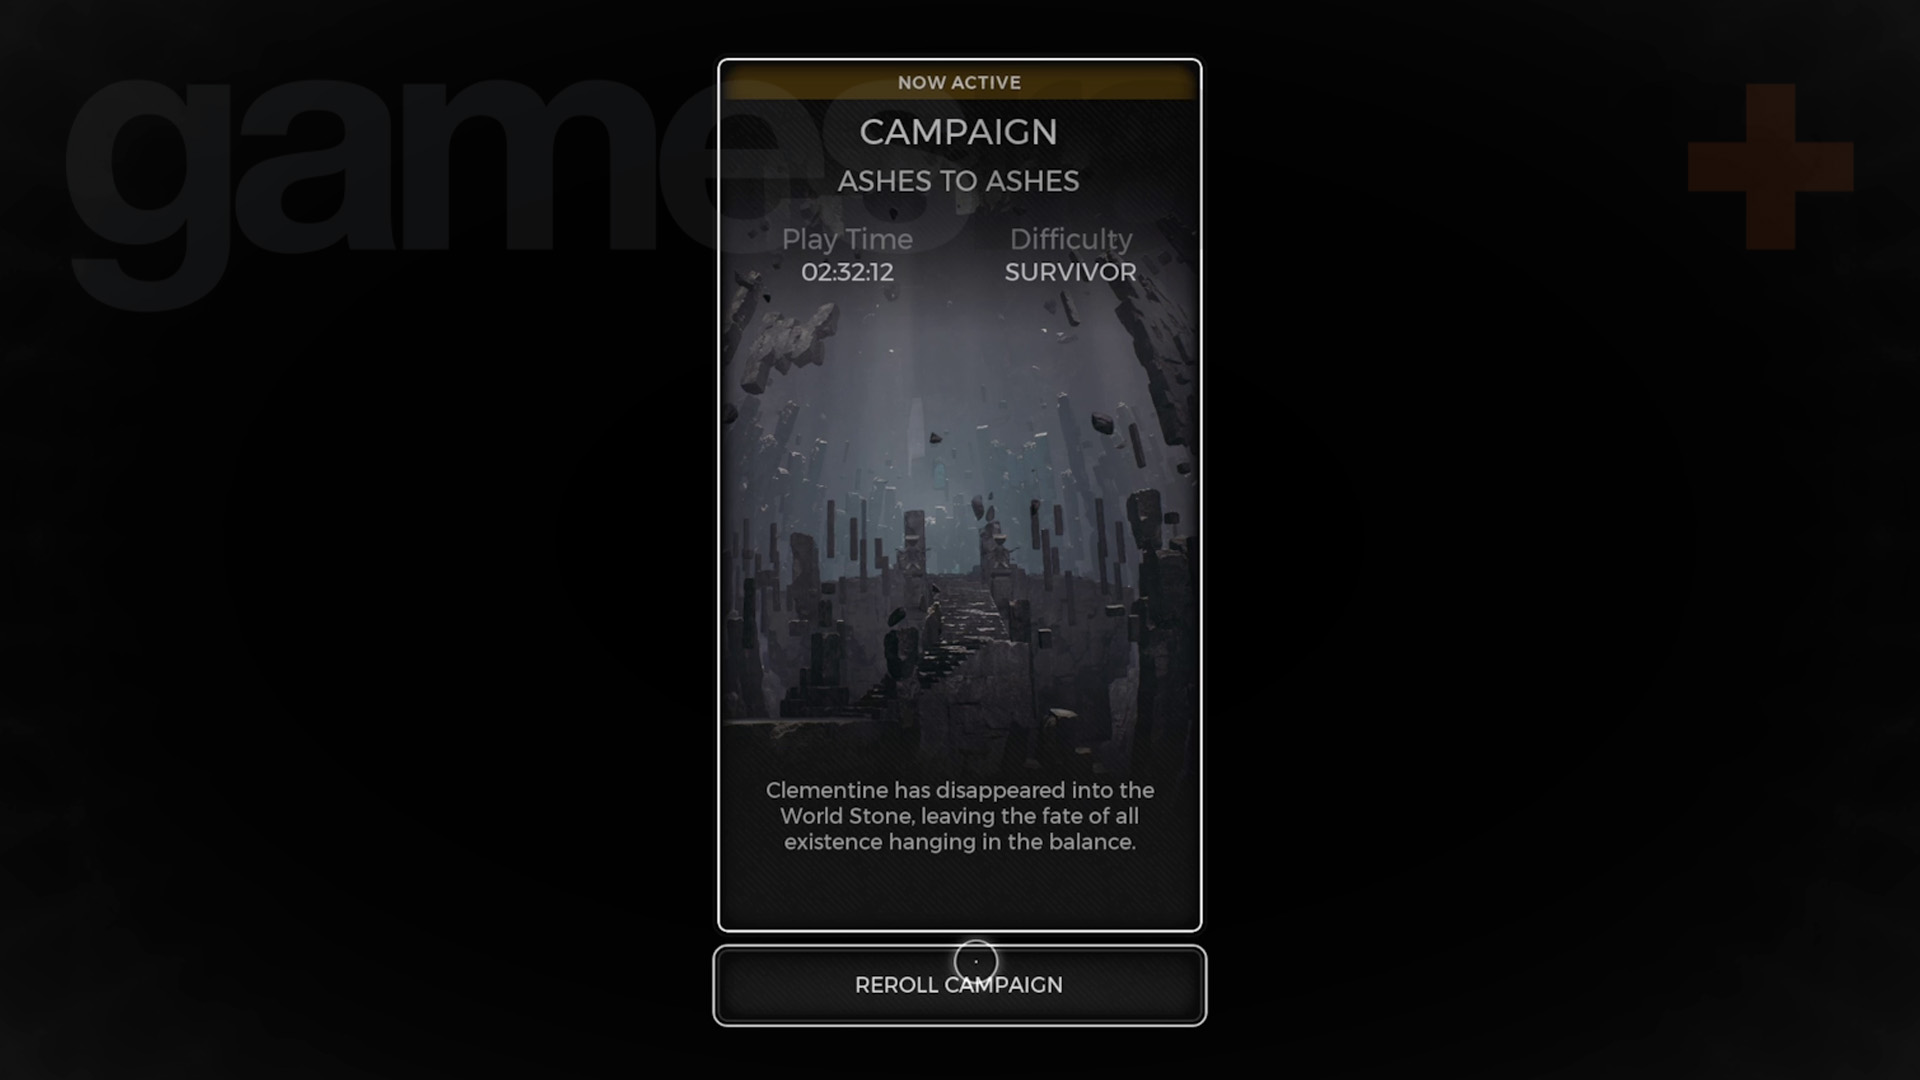 Кнопка повторного проведения кампании в Remnant 2 в меню worldstone